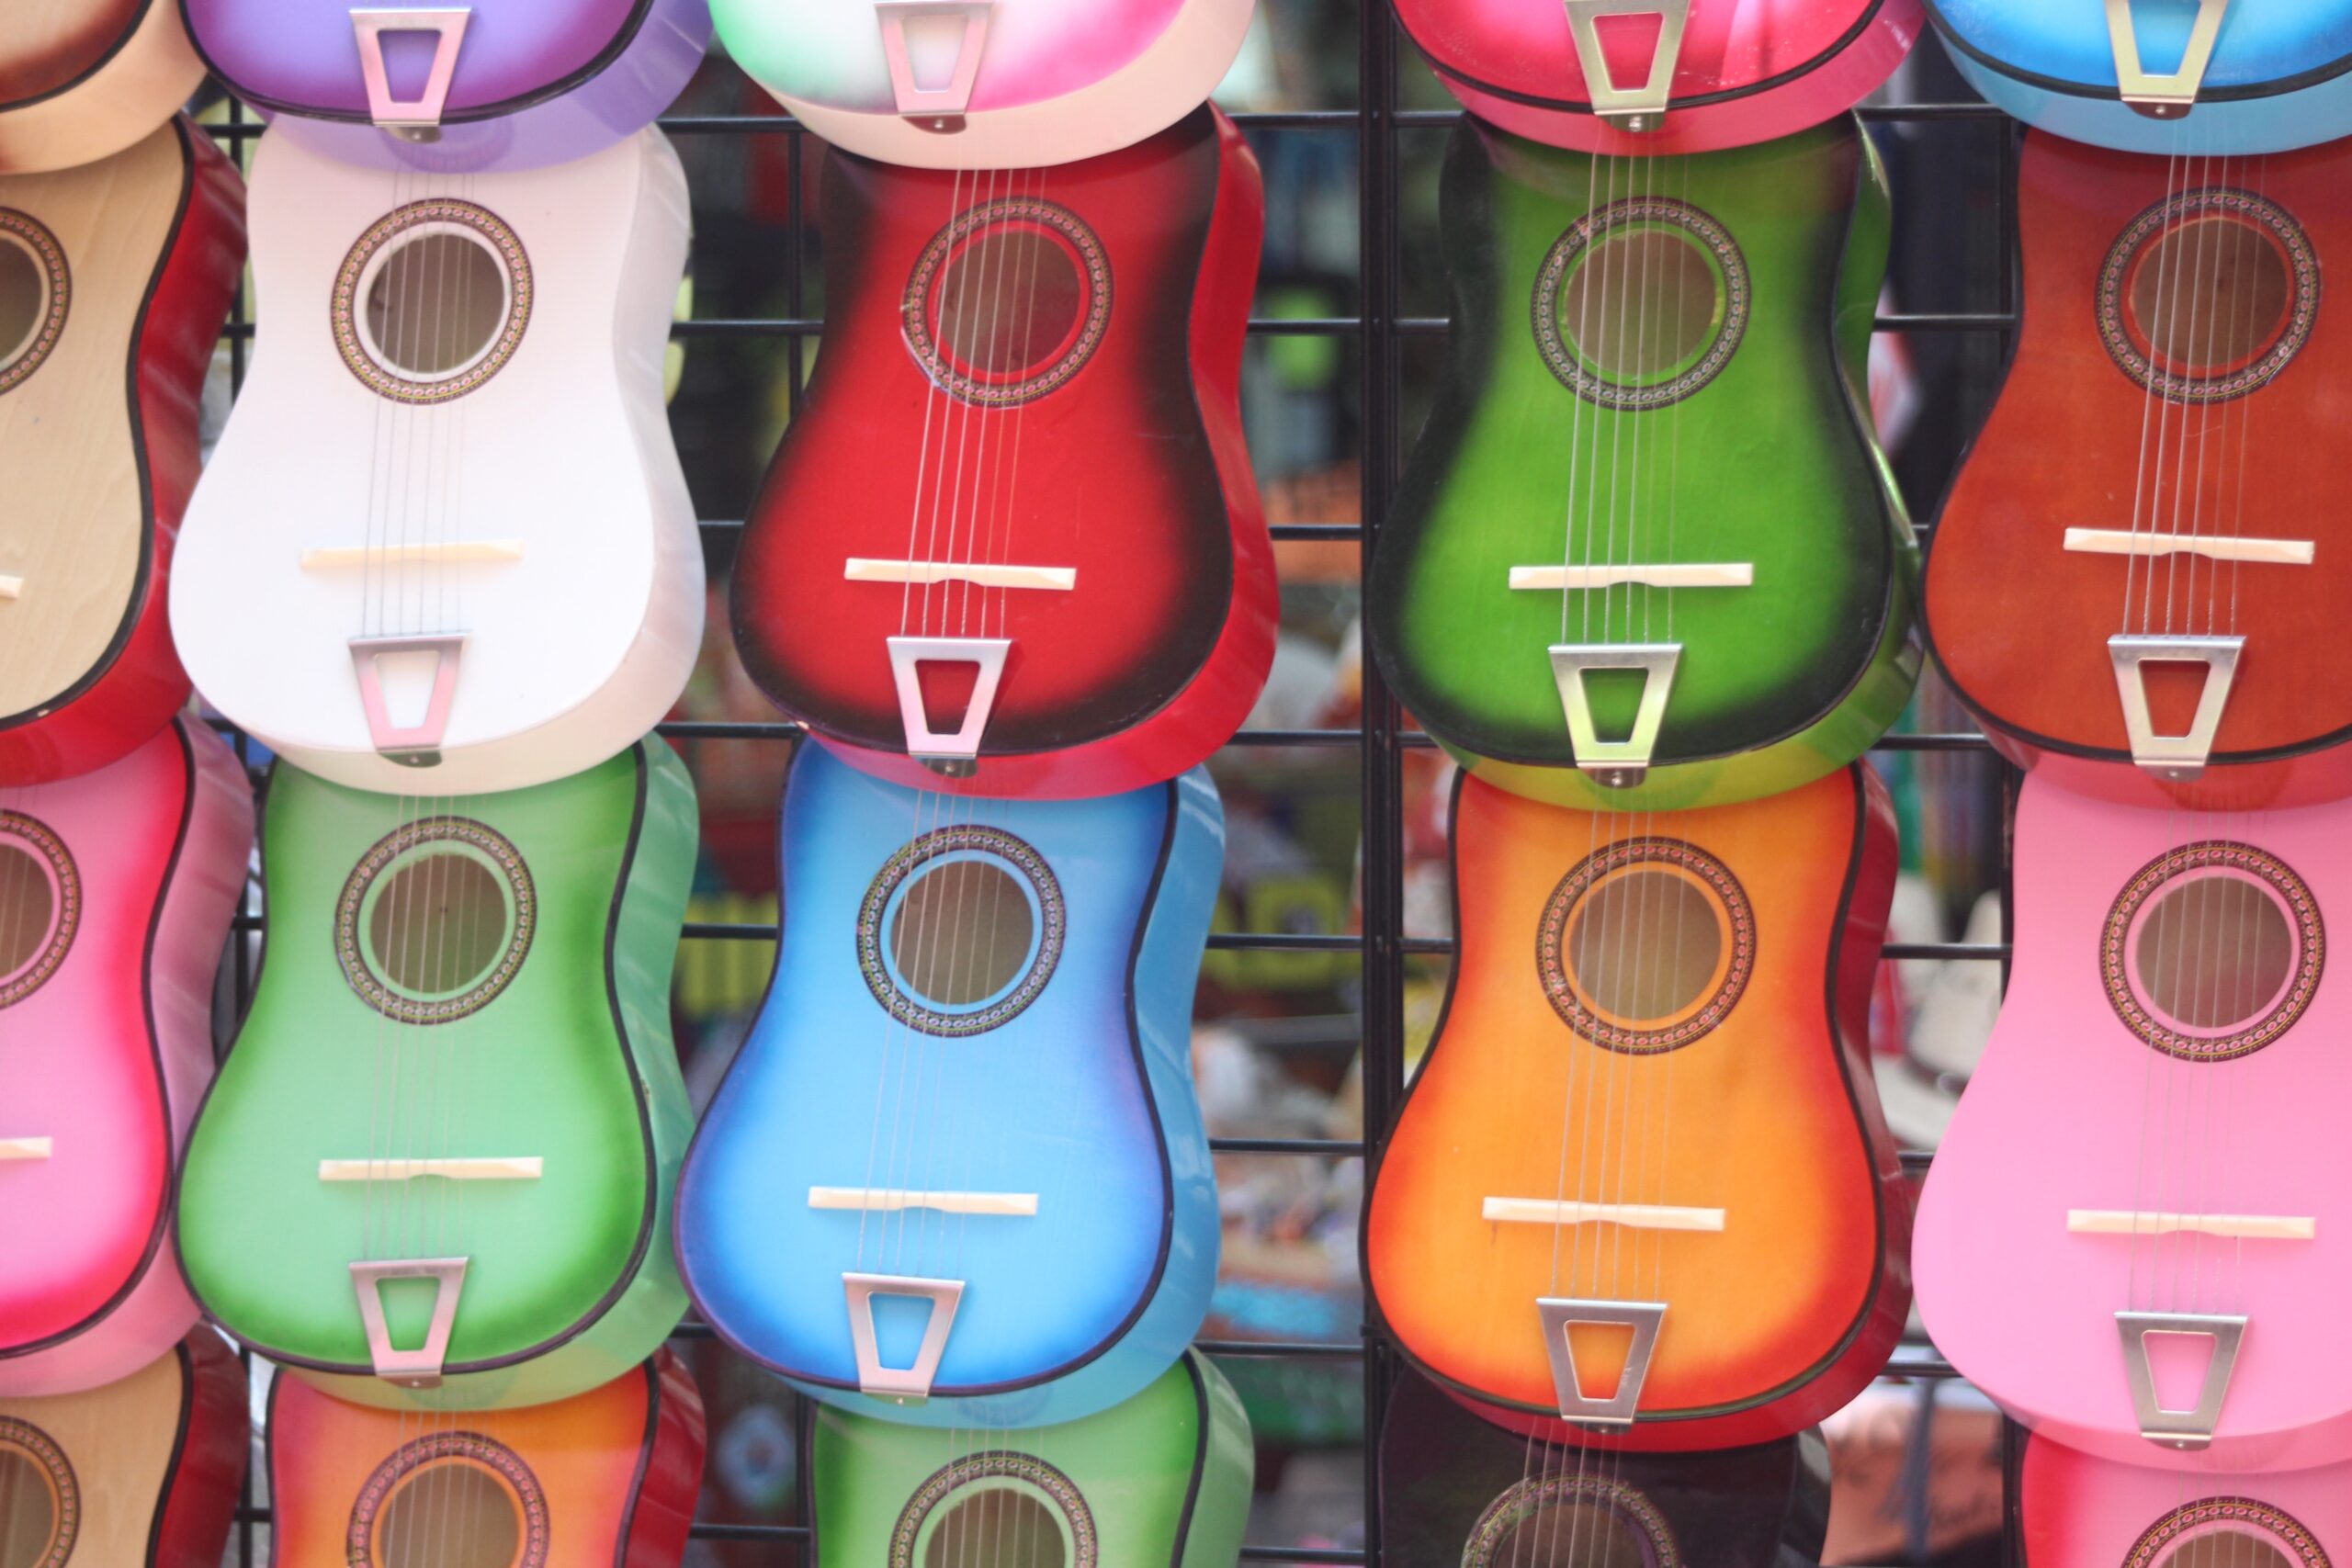 Colored ukulele